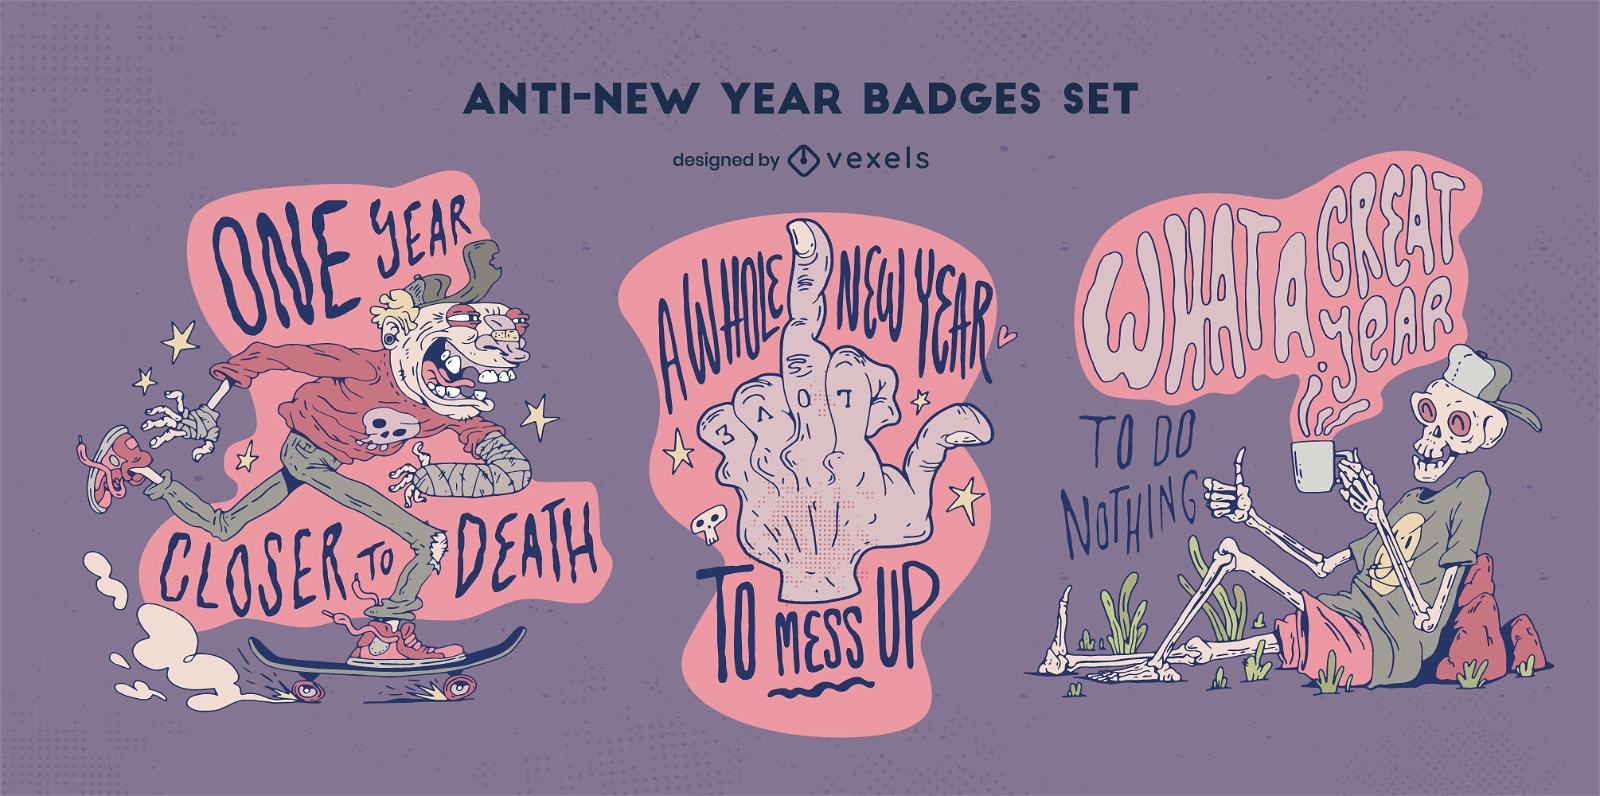 Divertido conjunto de insignias de zombies anti año nuevo